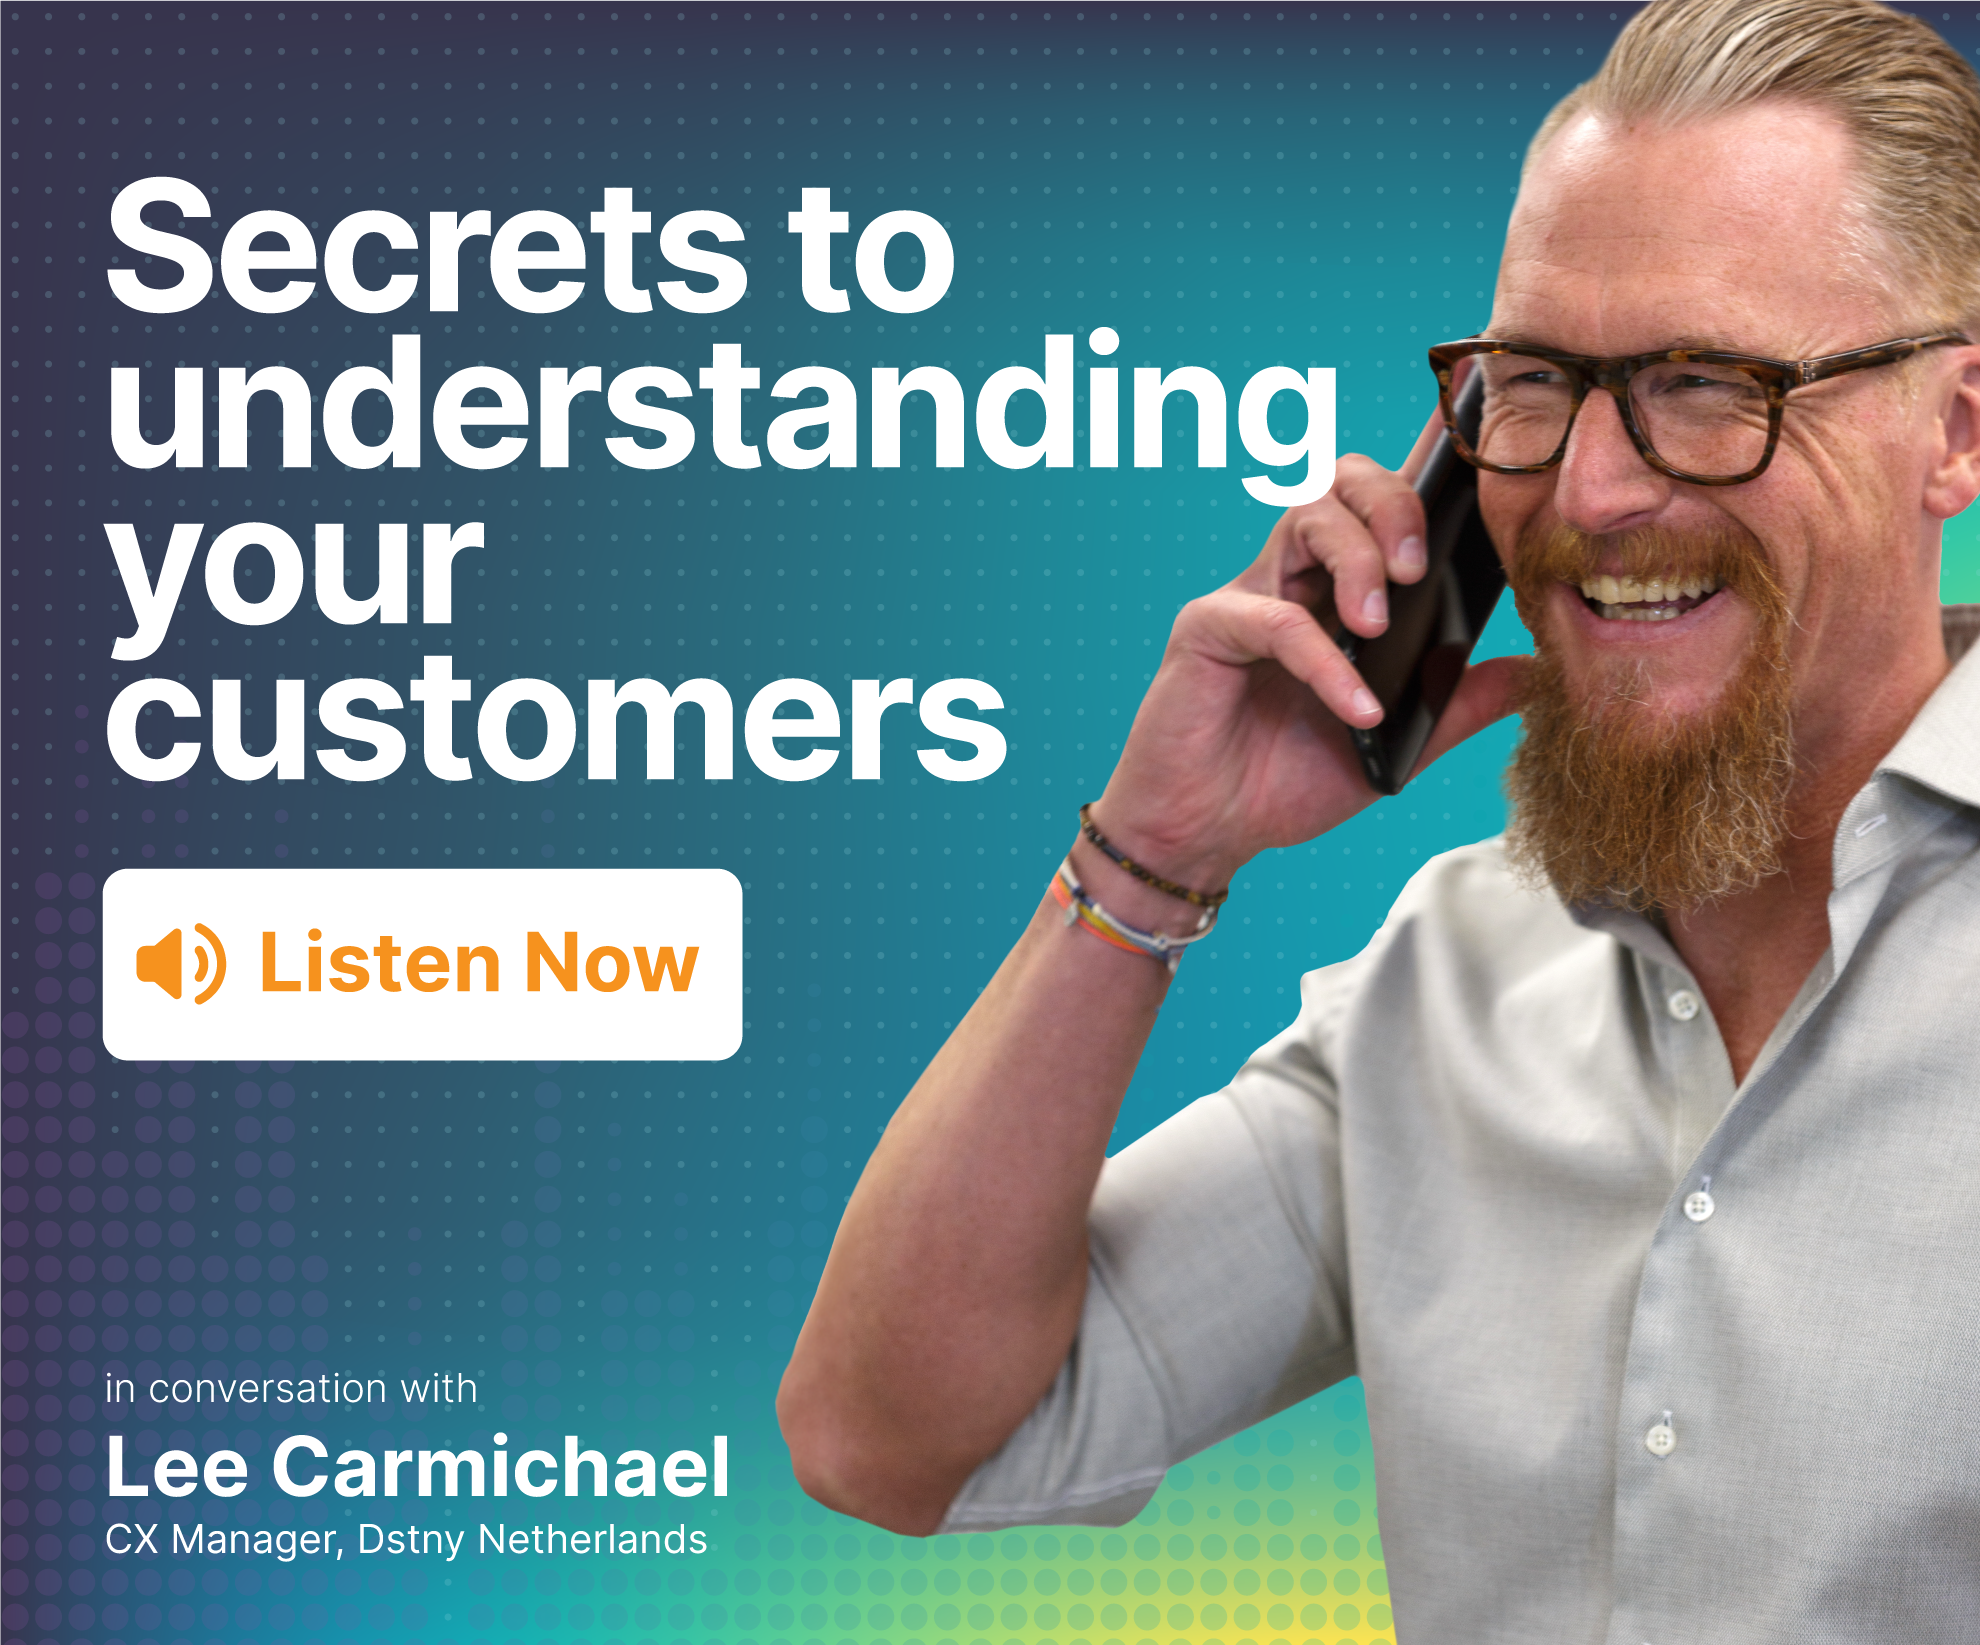 Secrets to understanding your customers